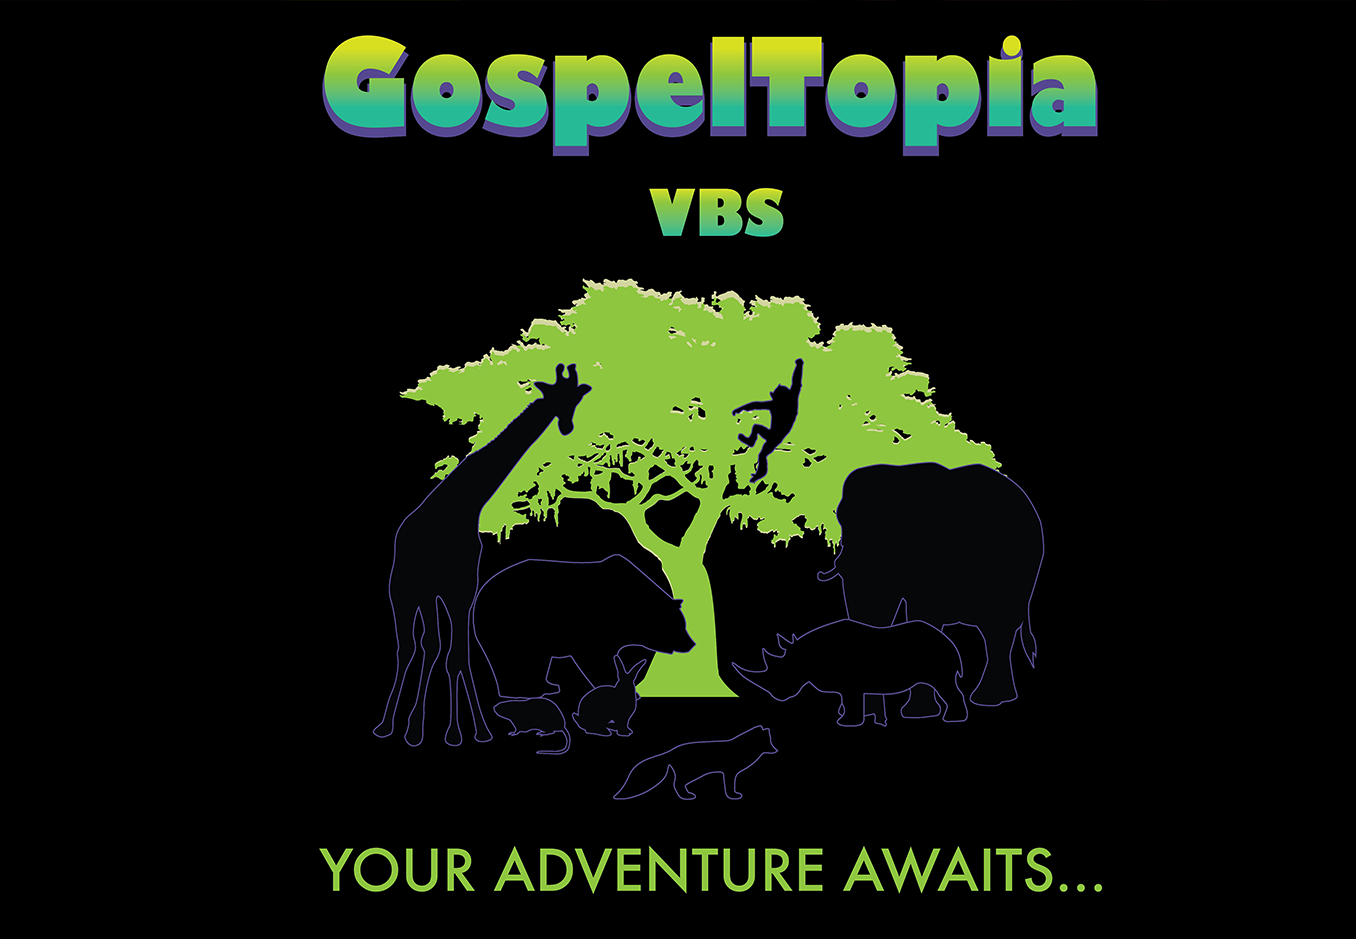 Gospeltopia VBS Curriculum